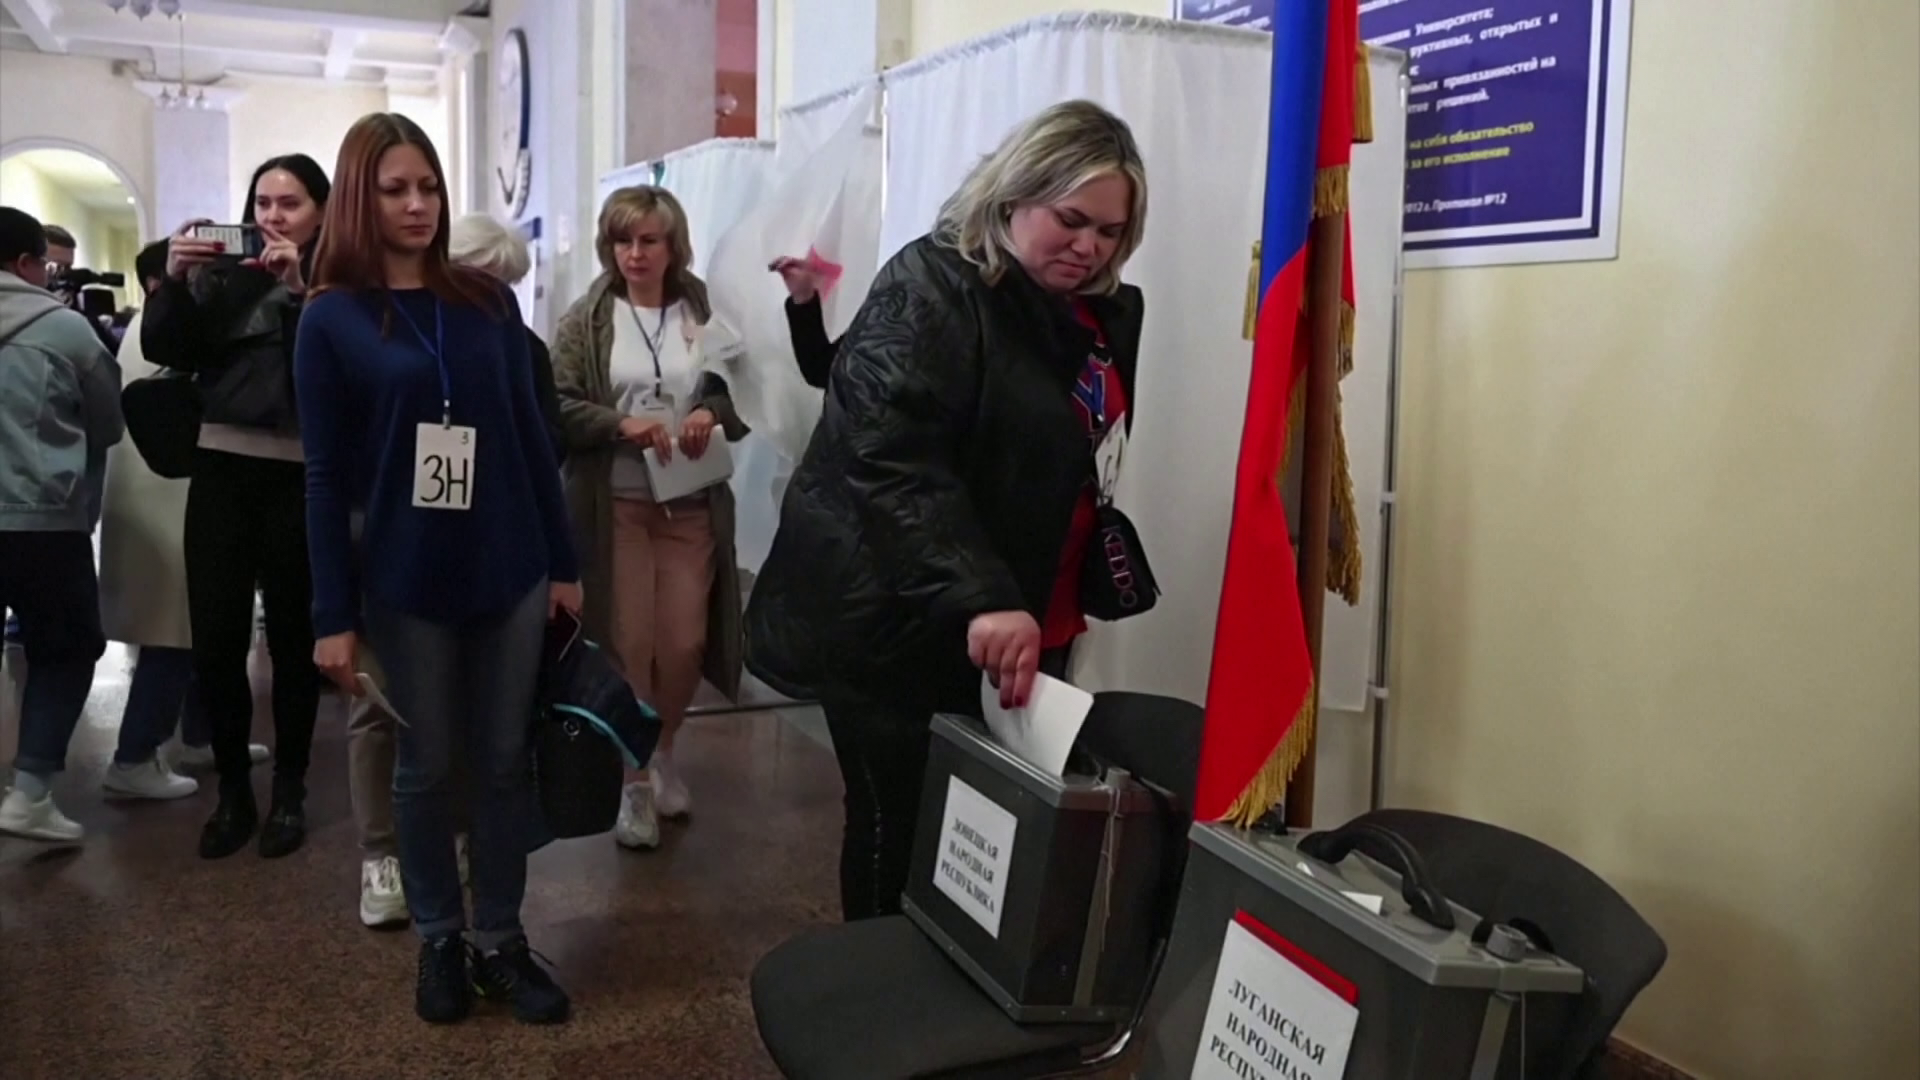 Szerbia nem fogadja el az ukrajnai népszavazások eredményeit